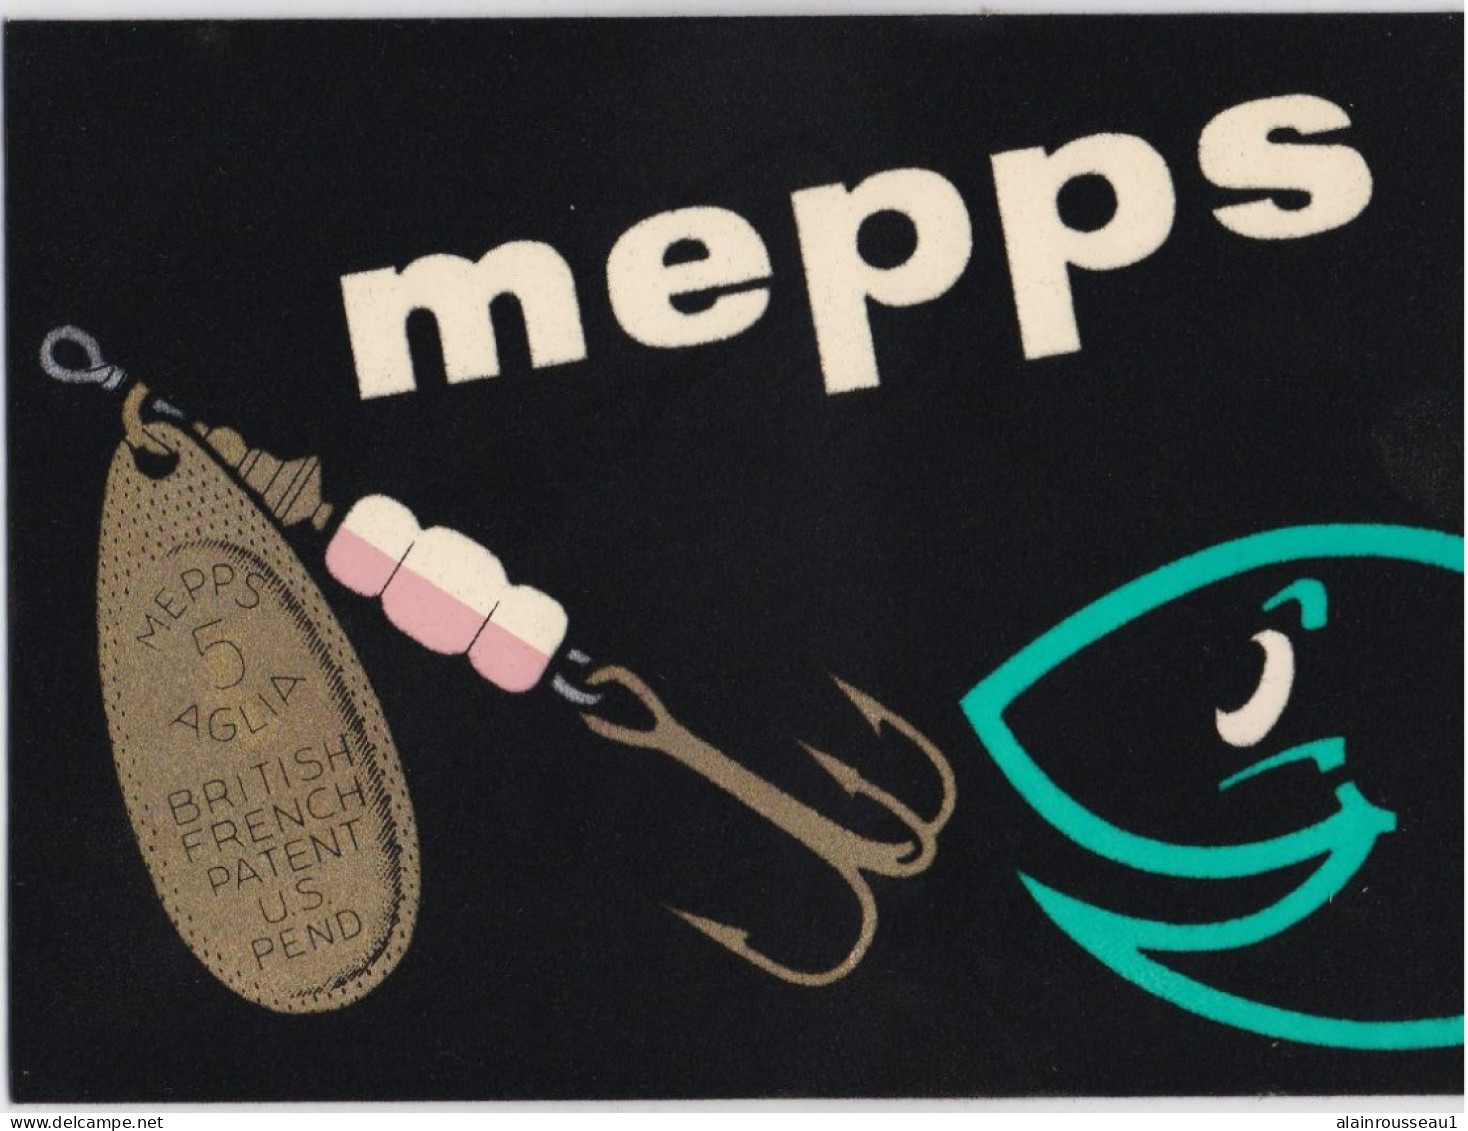 Fischerei - Affichette cartonnée publicitaire texticolor pour les cuillères  de pêche MEPPS